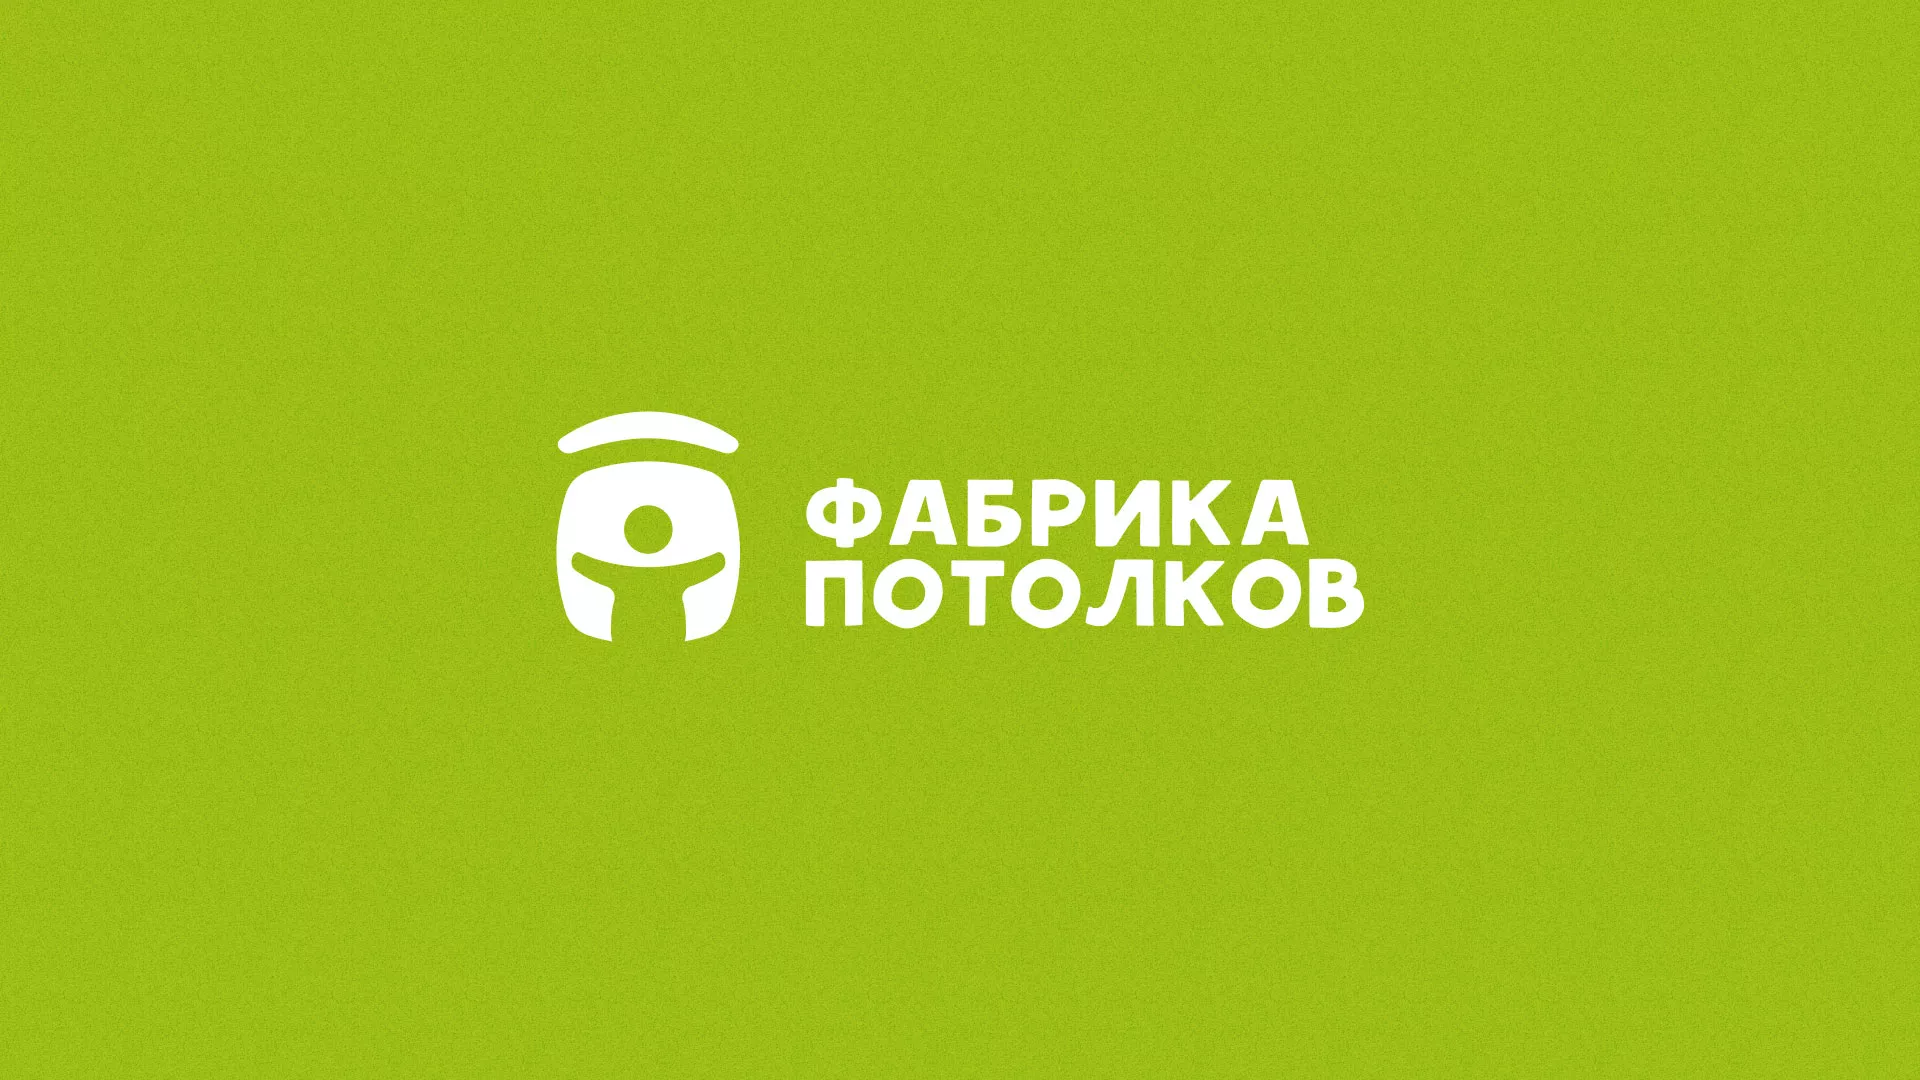 Разработка логотипа для производства натяжных потолков в Ярославле